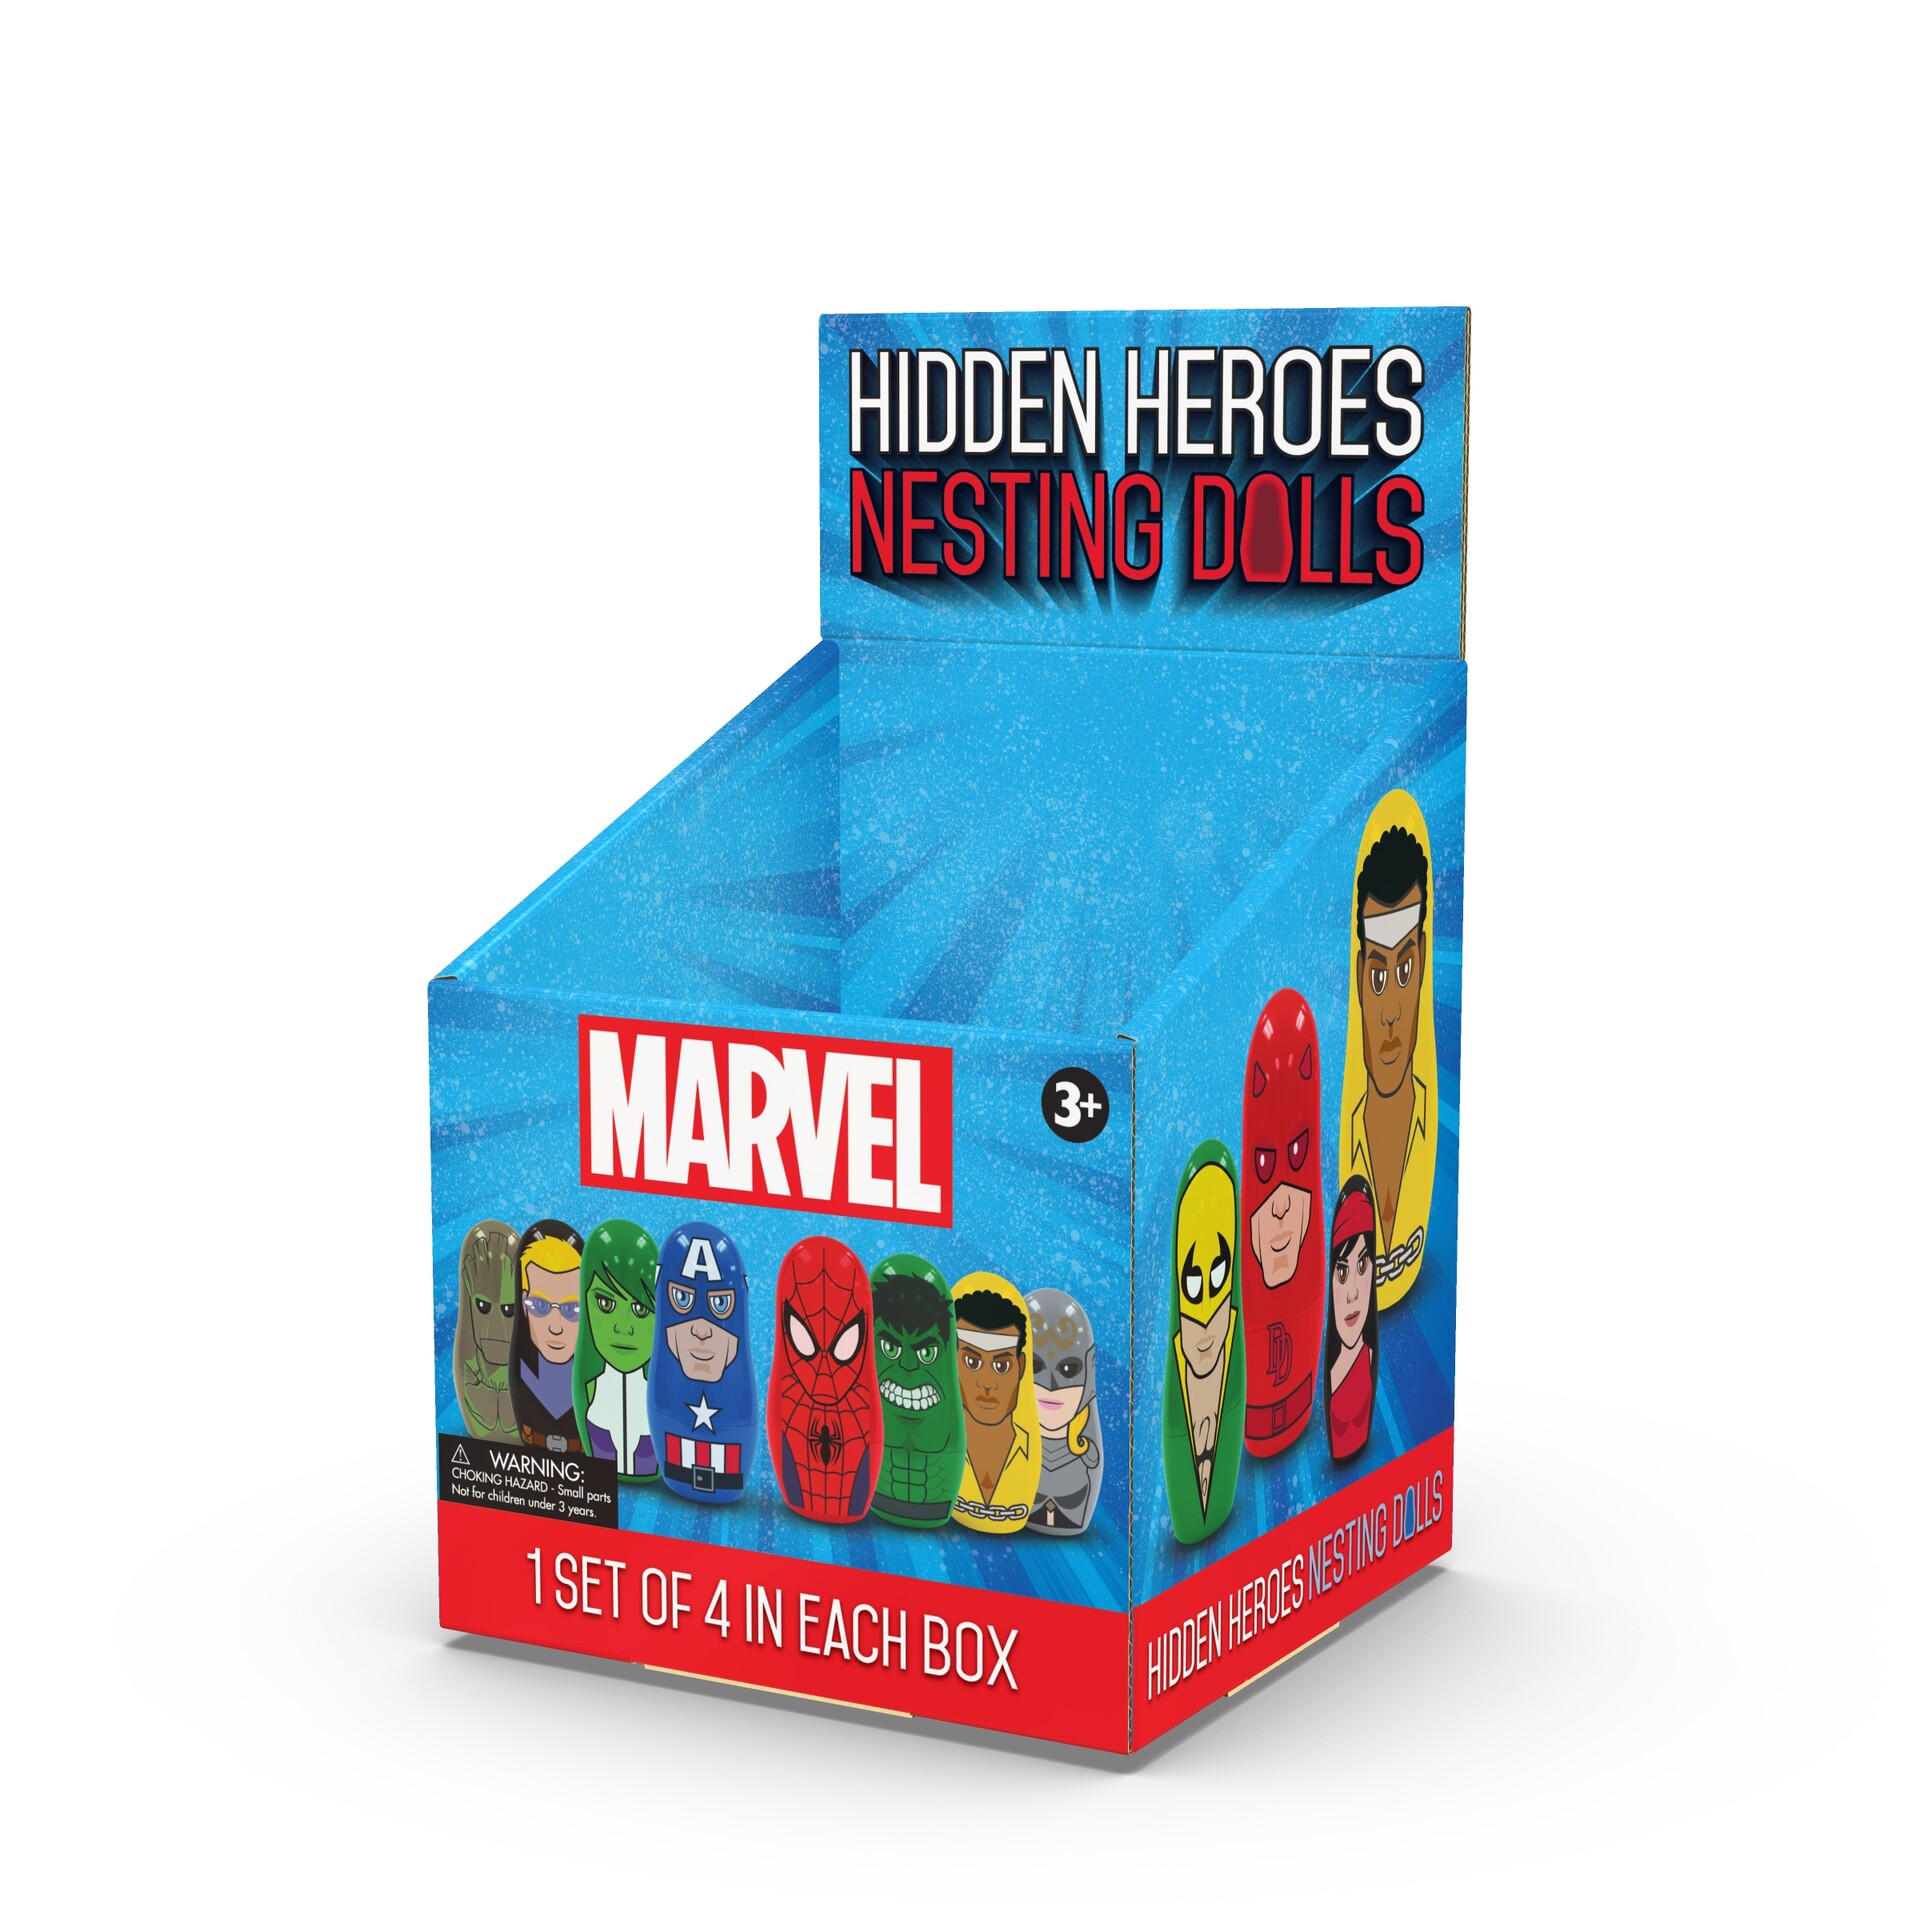 1 Set of 4 Dolls Marvel Blind Boxed Hidden Heroes Nesting Dolls 